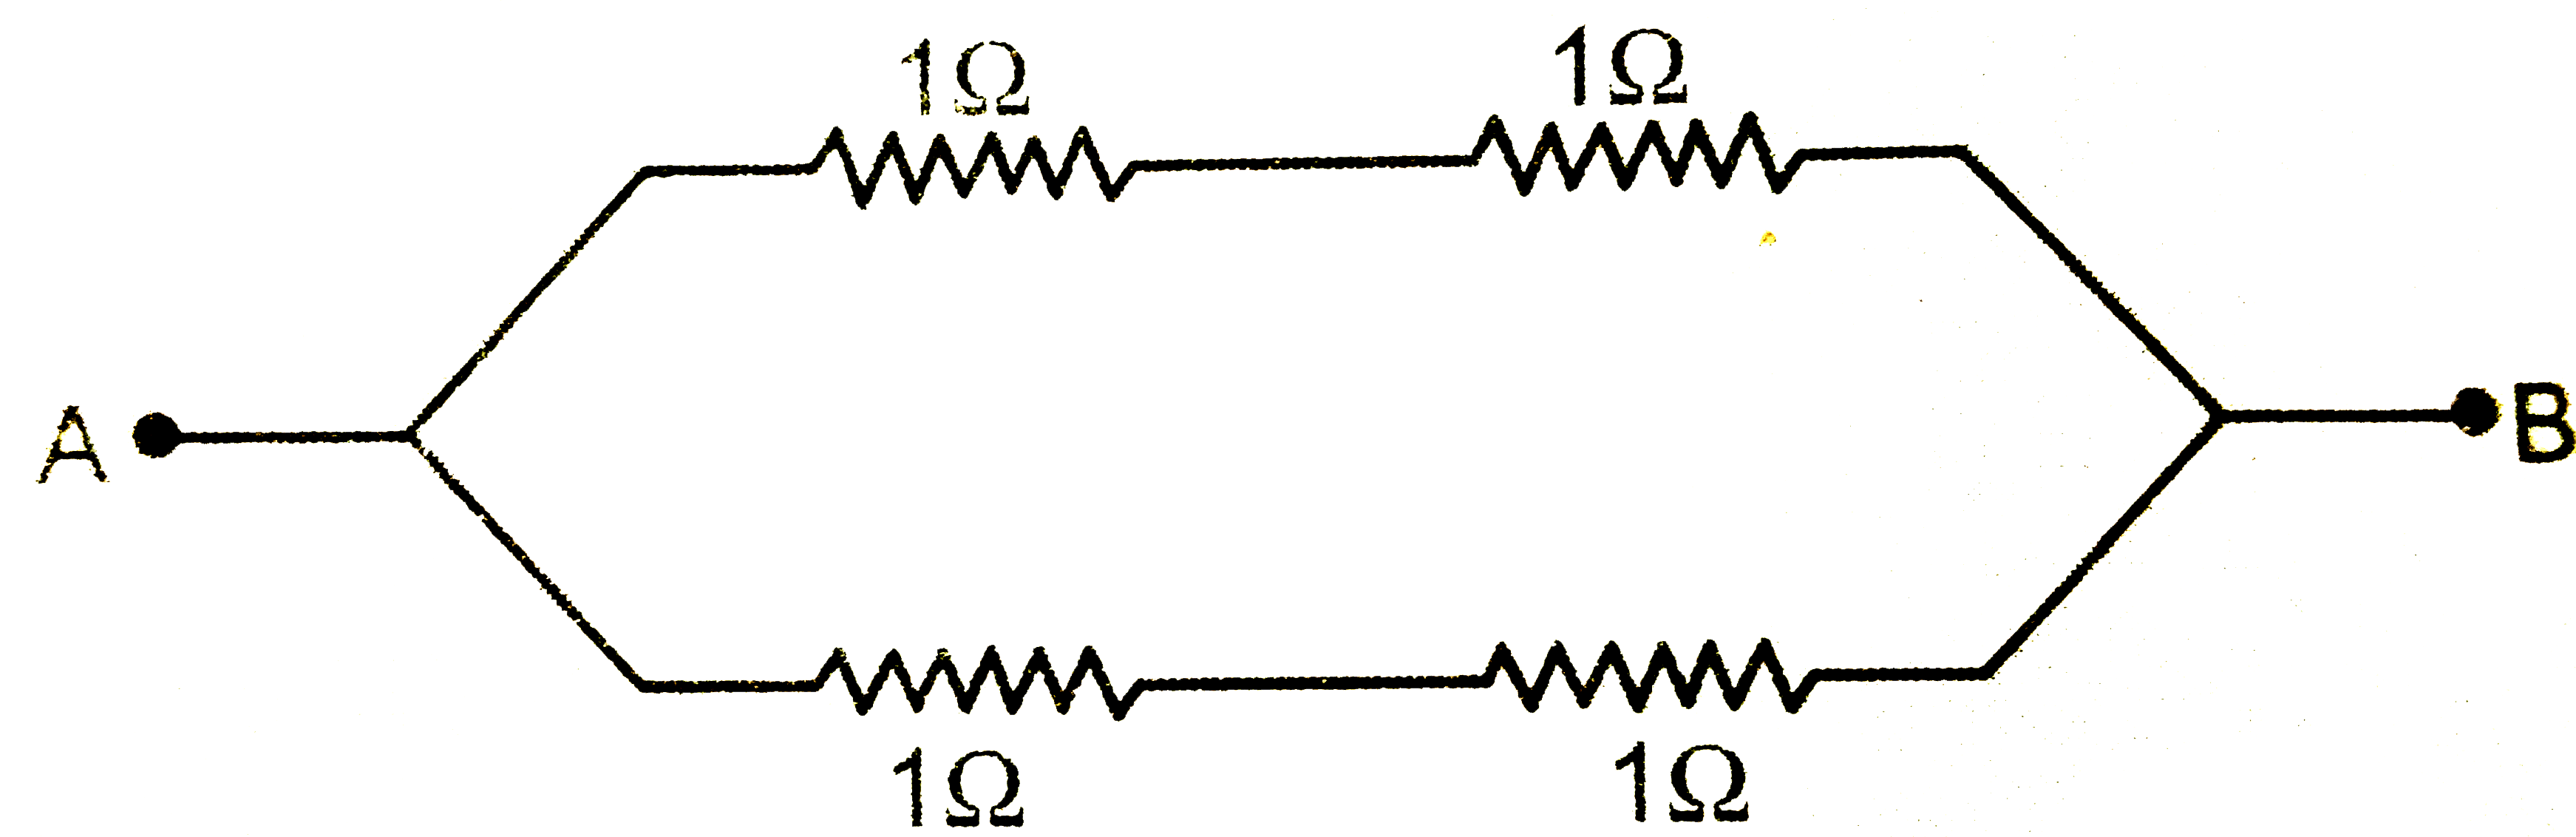 संलग्न विद्युत् परिपथ में A व B बिन्दुओं के बीच समतुल्य प्रतिरोध का मान ज्ञात कीजिए।